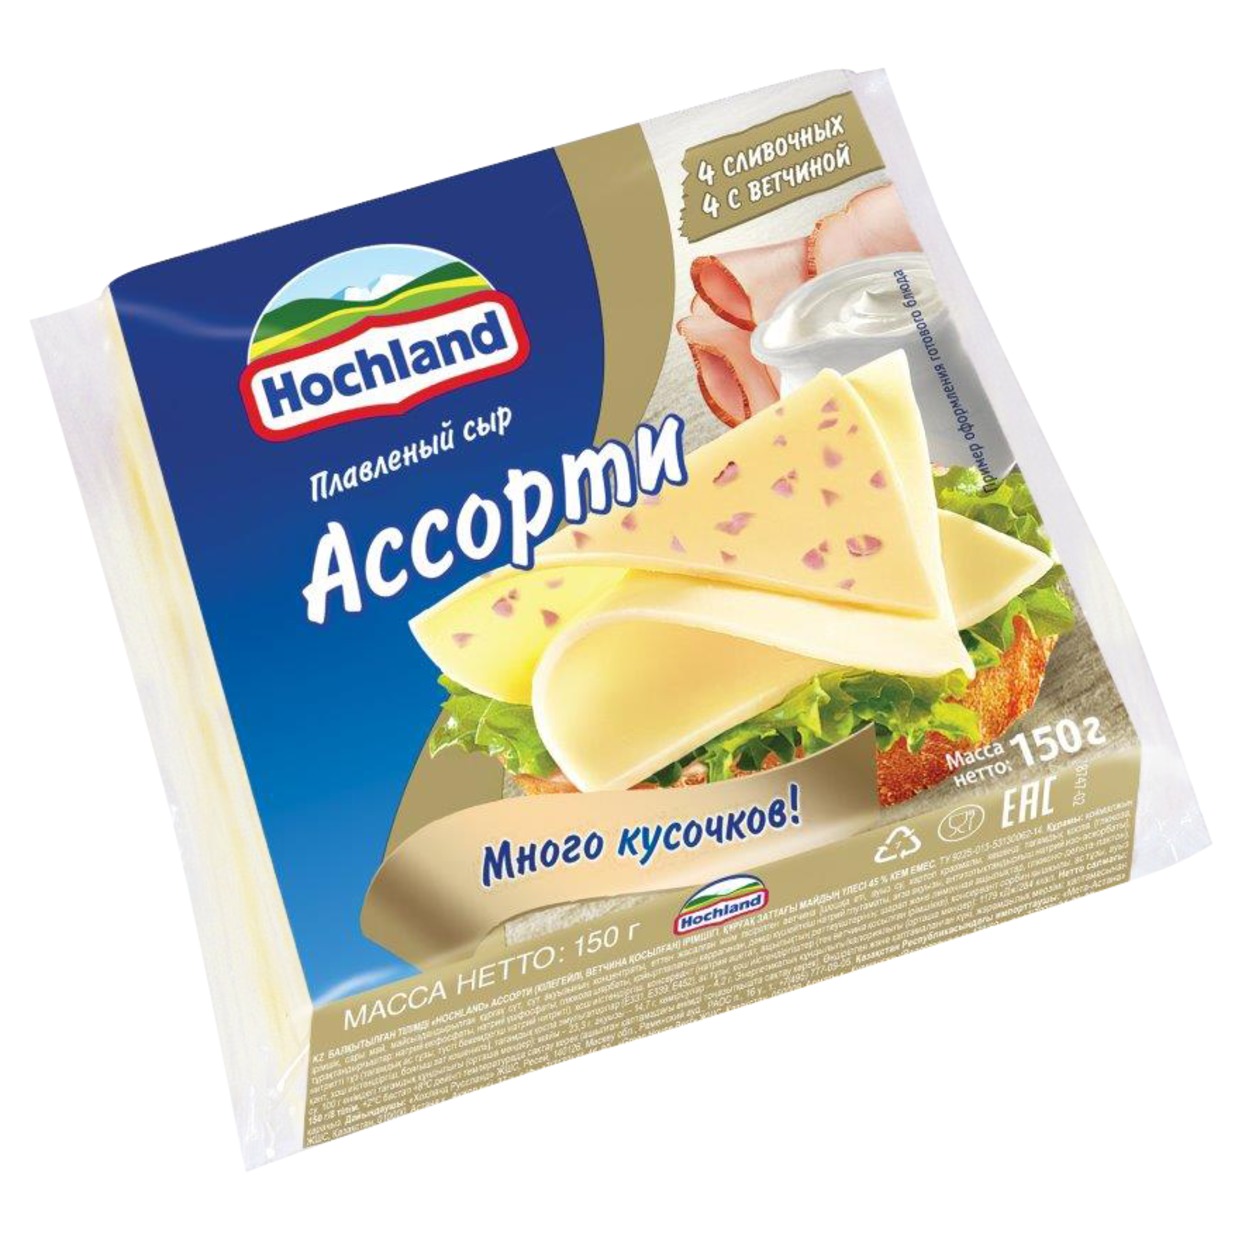 Сыр плавленый Hochland Ассорти 45% 150 г по акции в Пятерочке